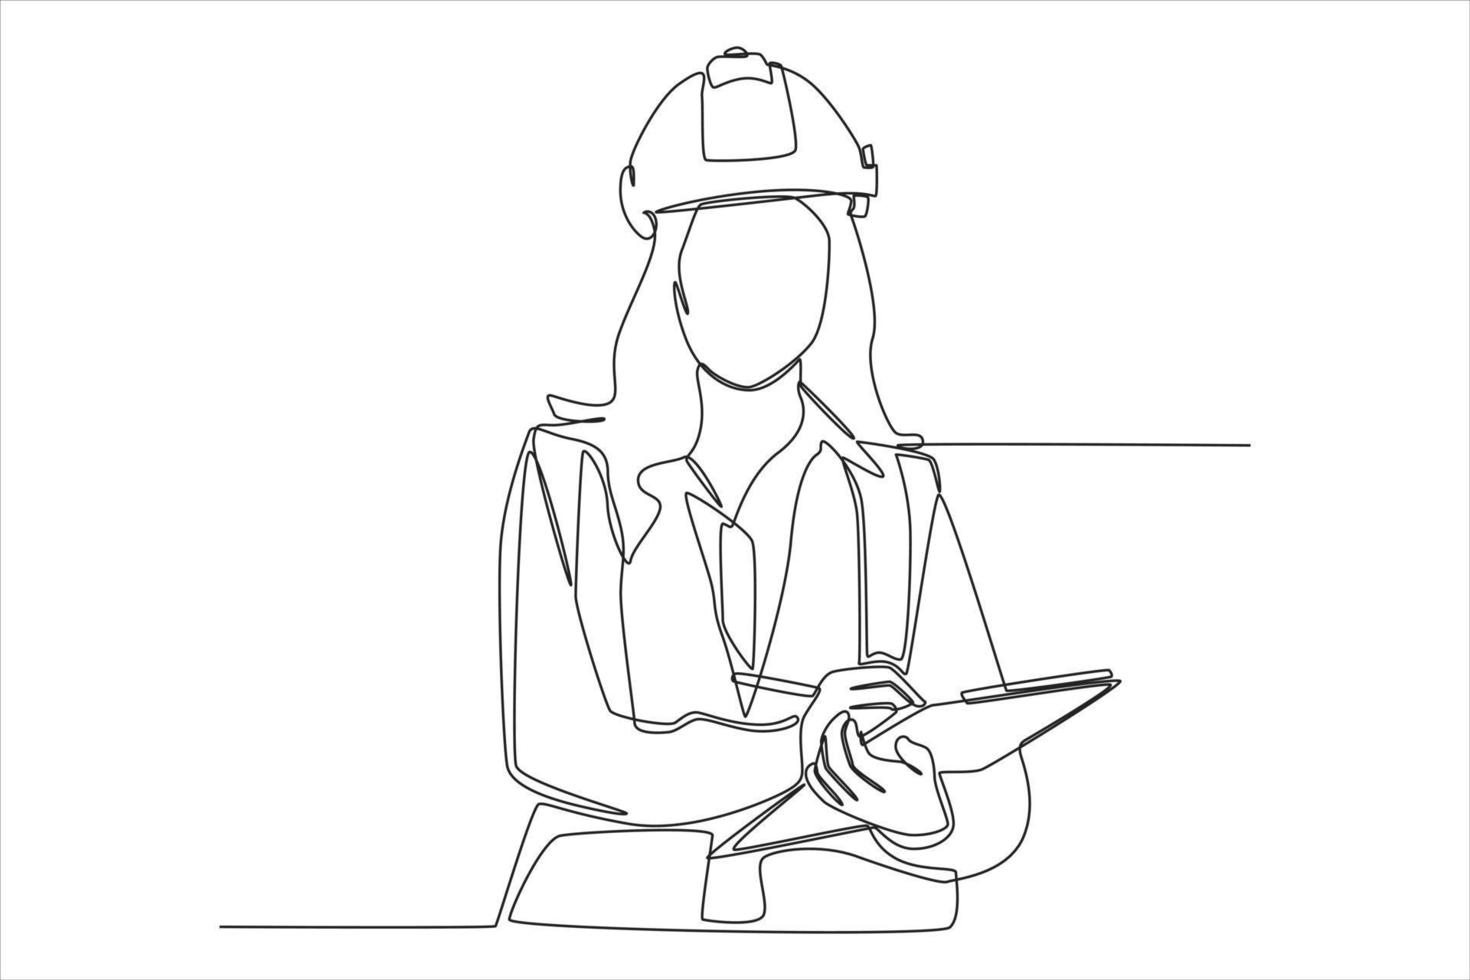 kontinuerlig en rad ritning kvinnlig byggnadsingenjör i skyddshjälm skriver gärna rapport. modern kvinna koncept. enda rad rita design vektorgrafisk illustration. vektor